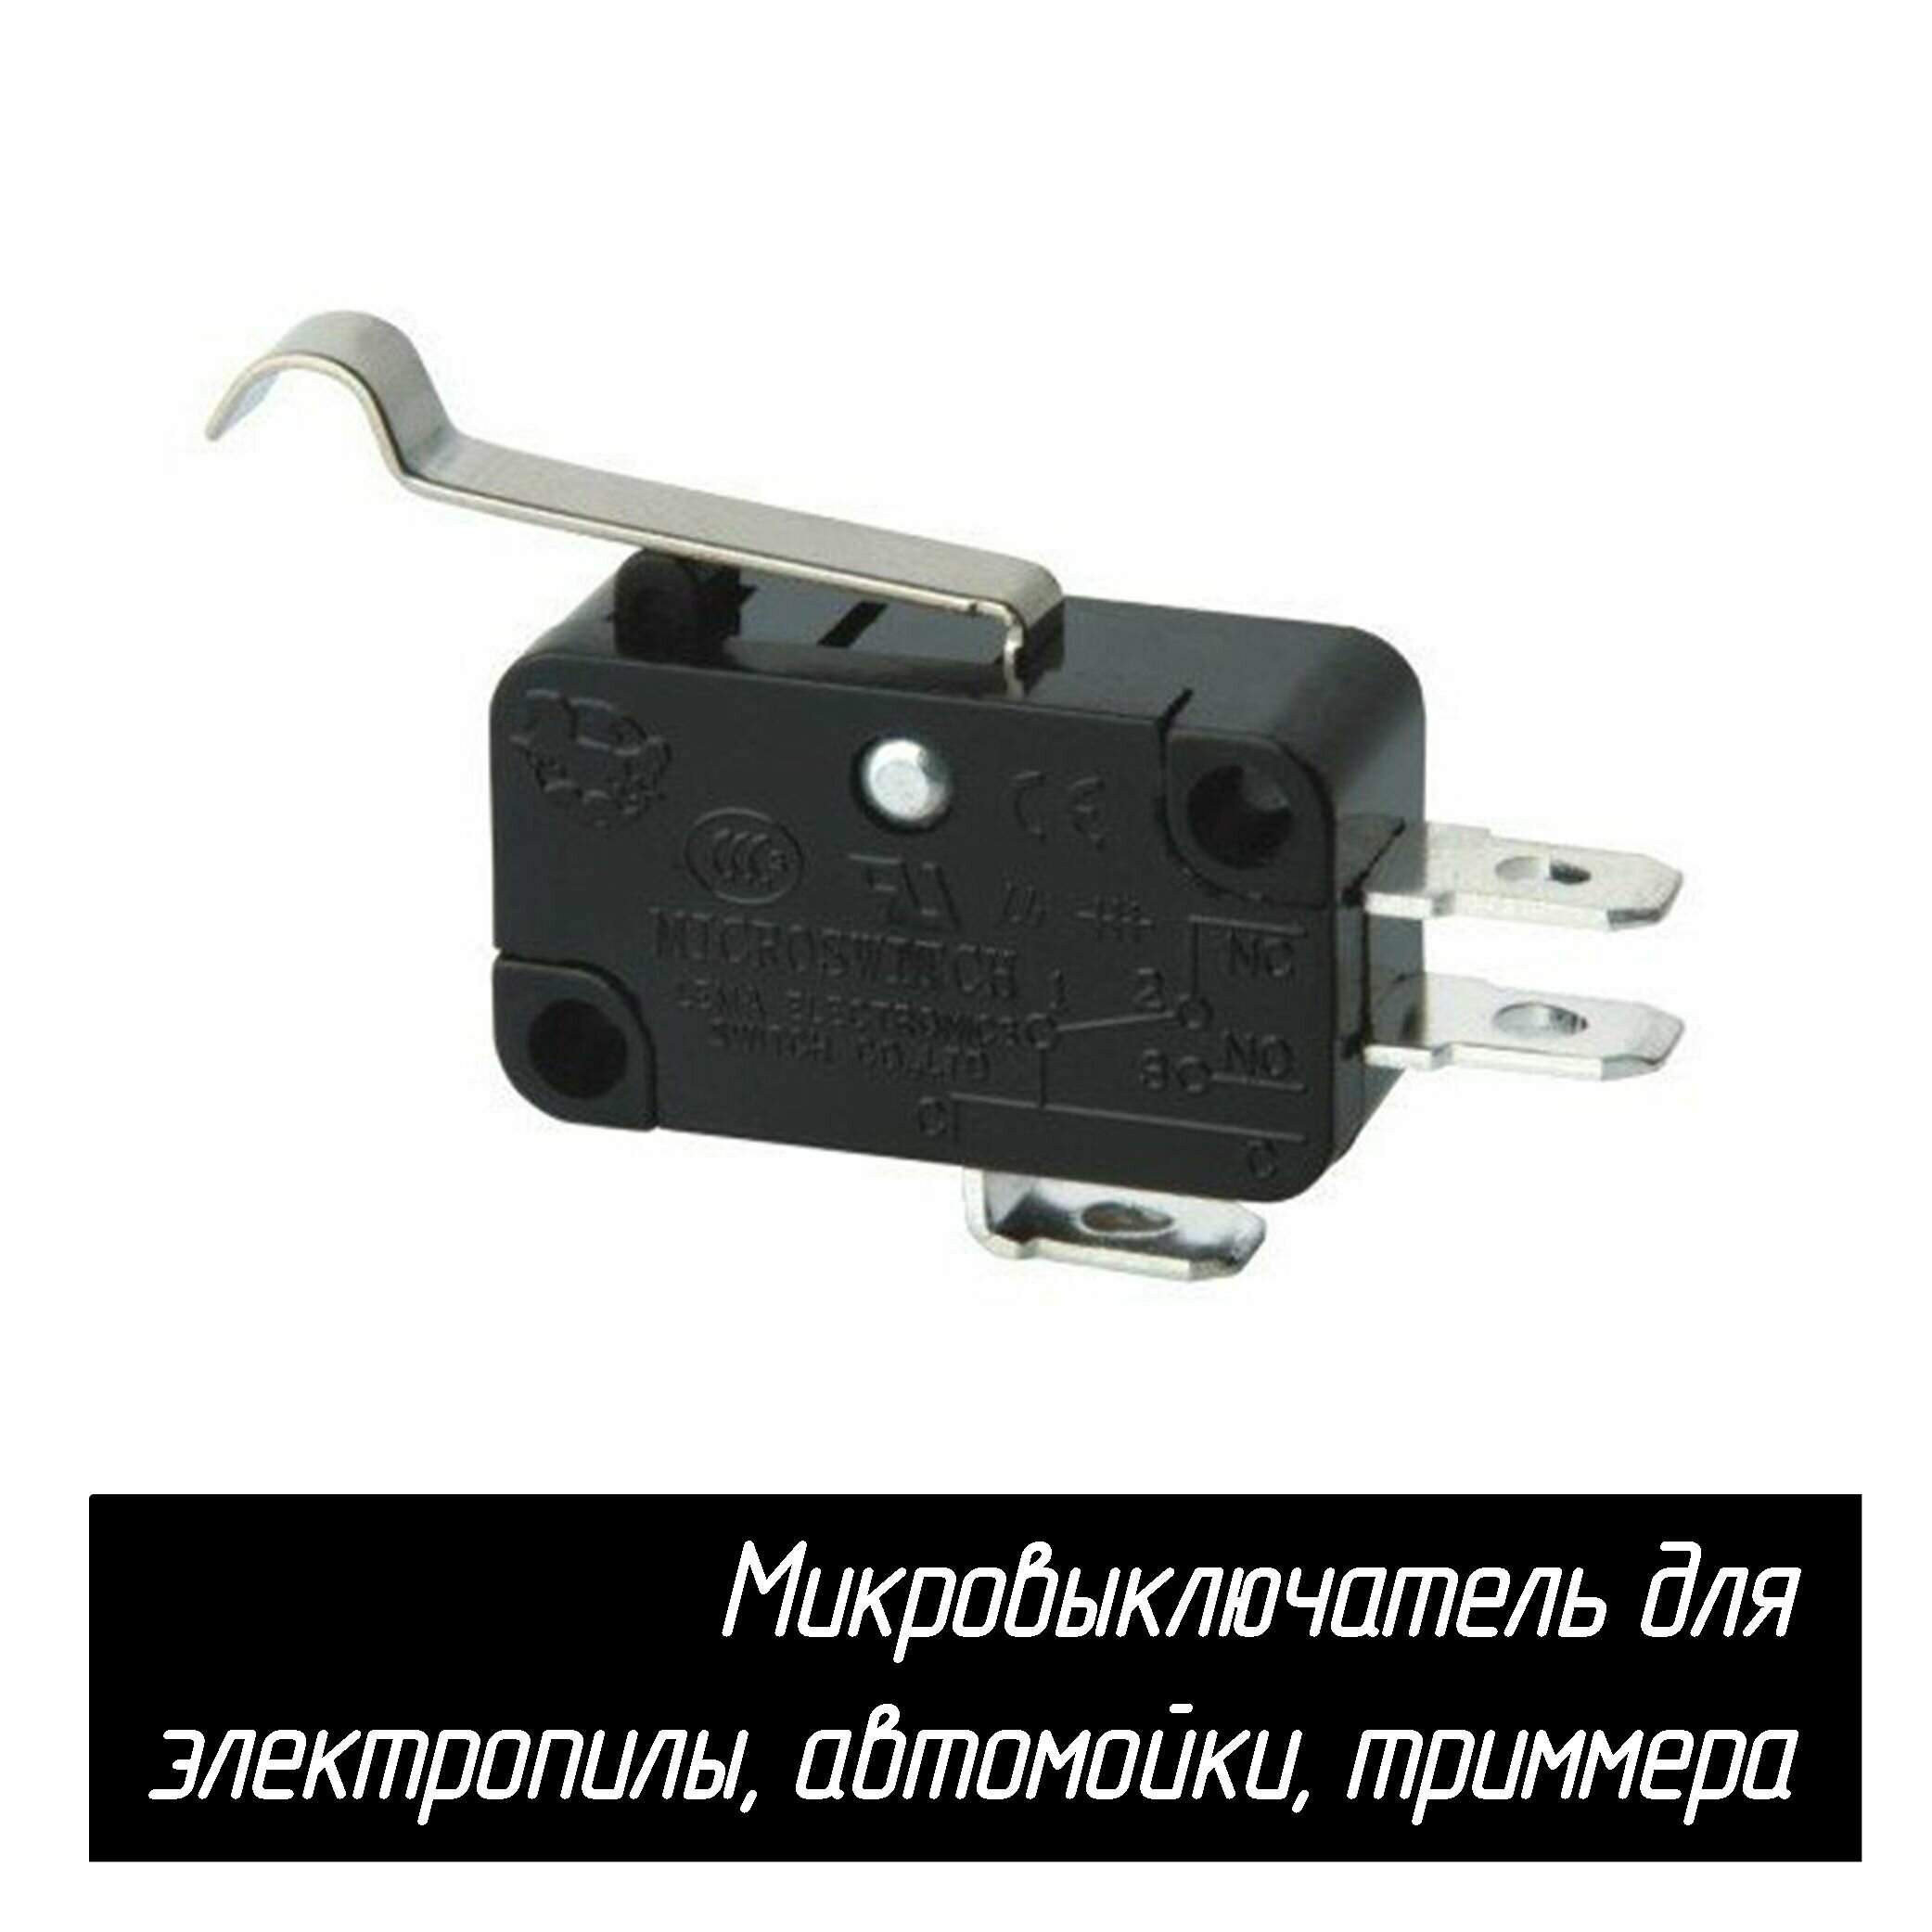 Микровыключатель (кнопка) KW7-0 16A 250VAC для электропилы, автомойки, триммера (с загнутой планкой)